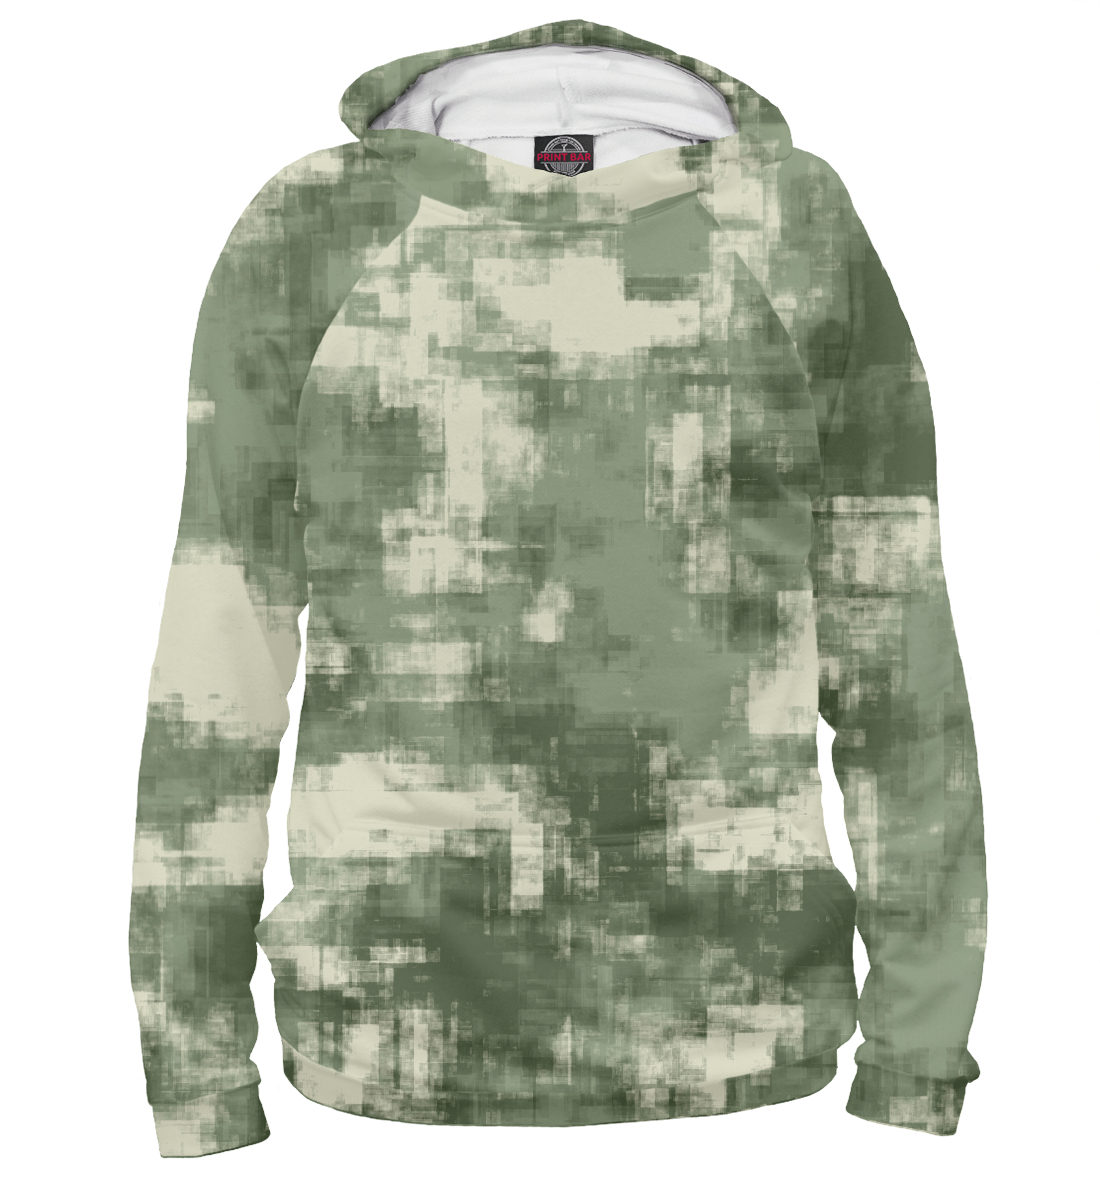 Мужской Худи Военный камуфляж- одежда для мужчин и женщин, артикул CMF-442561-hud-2mp